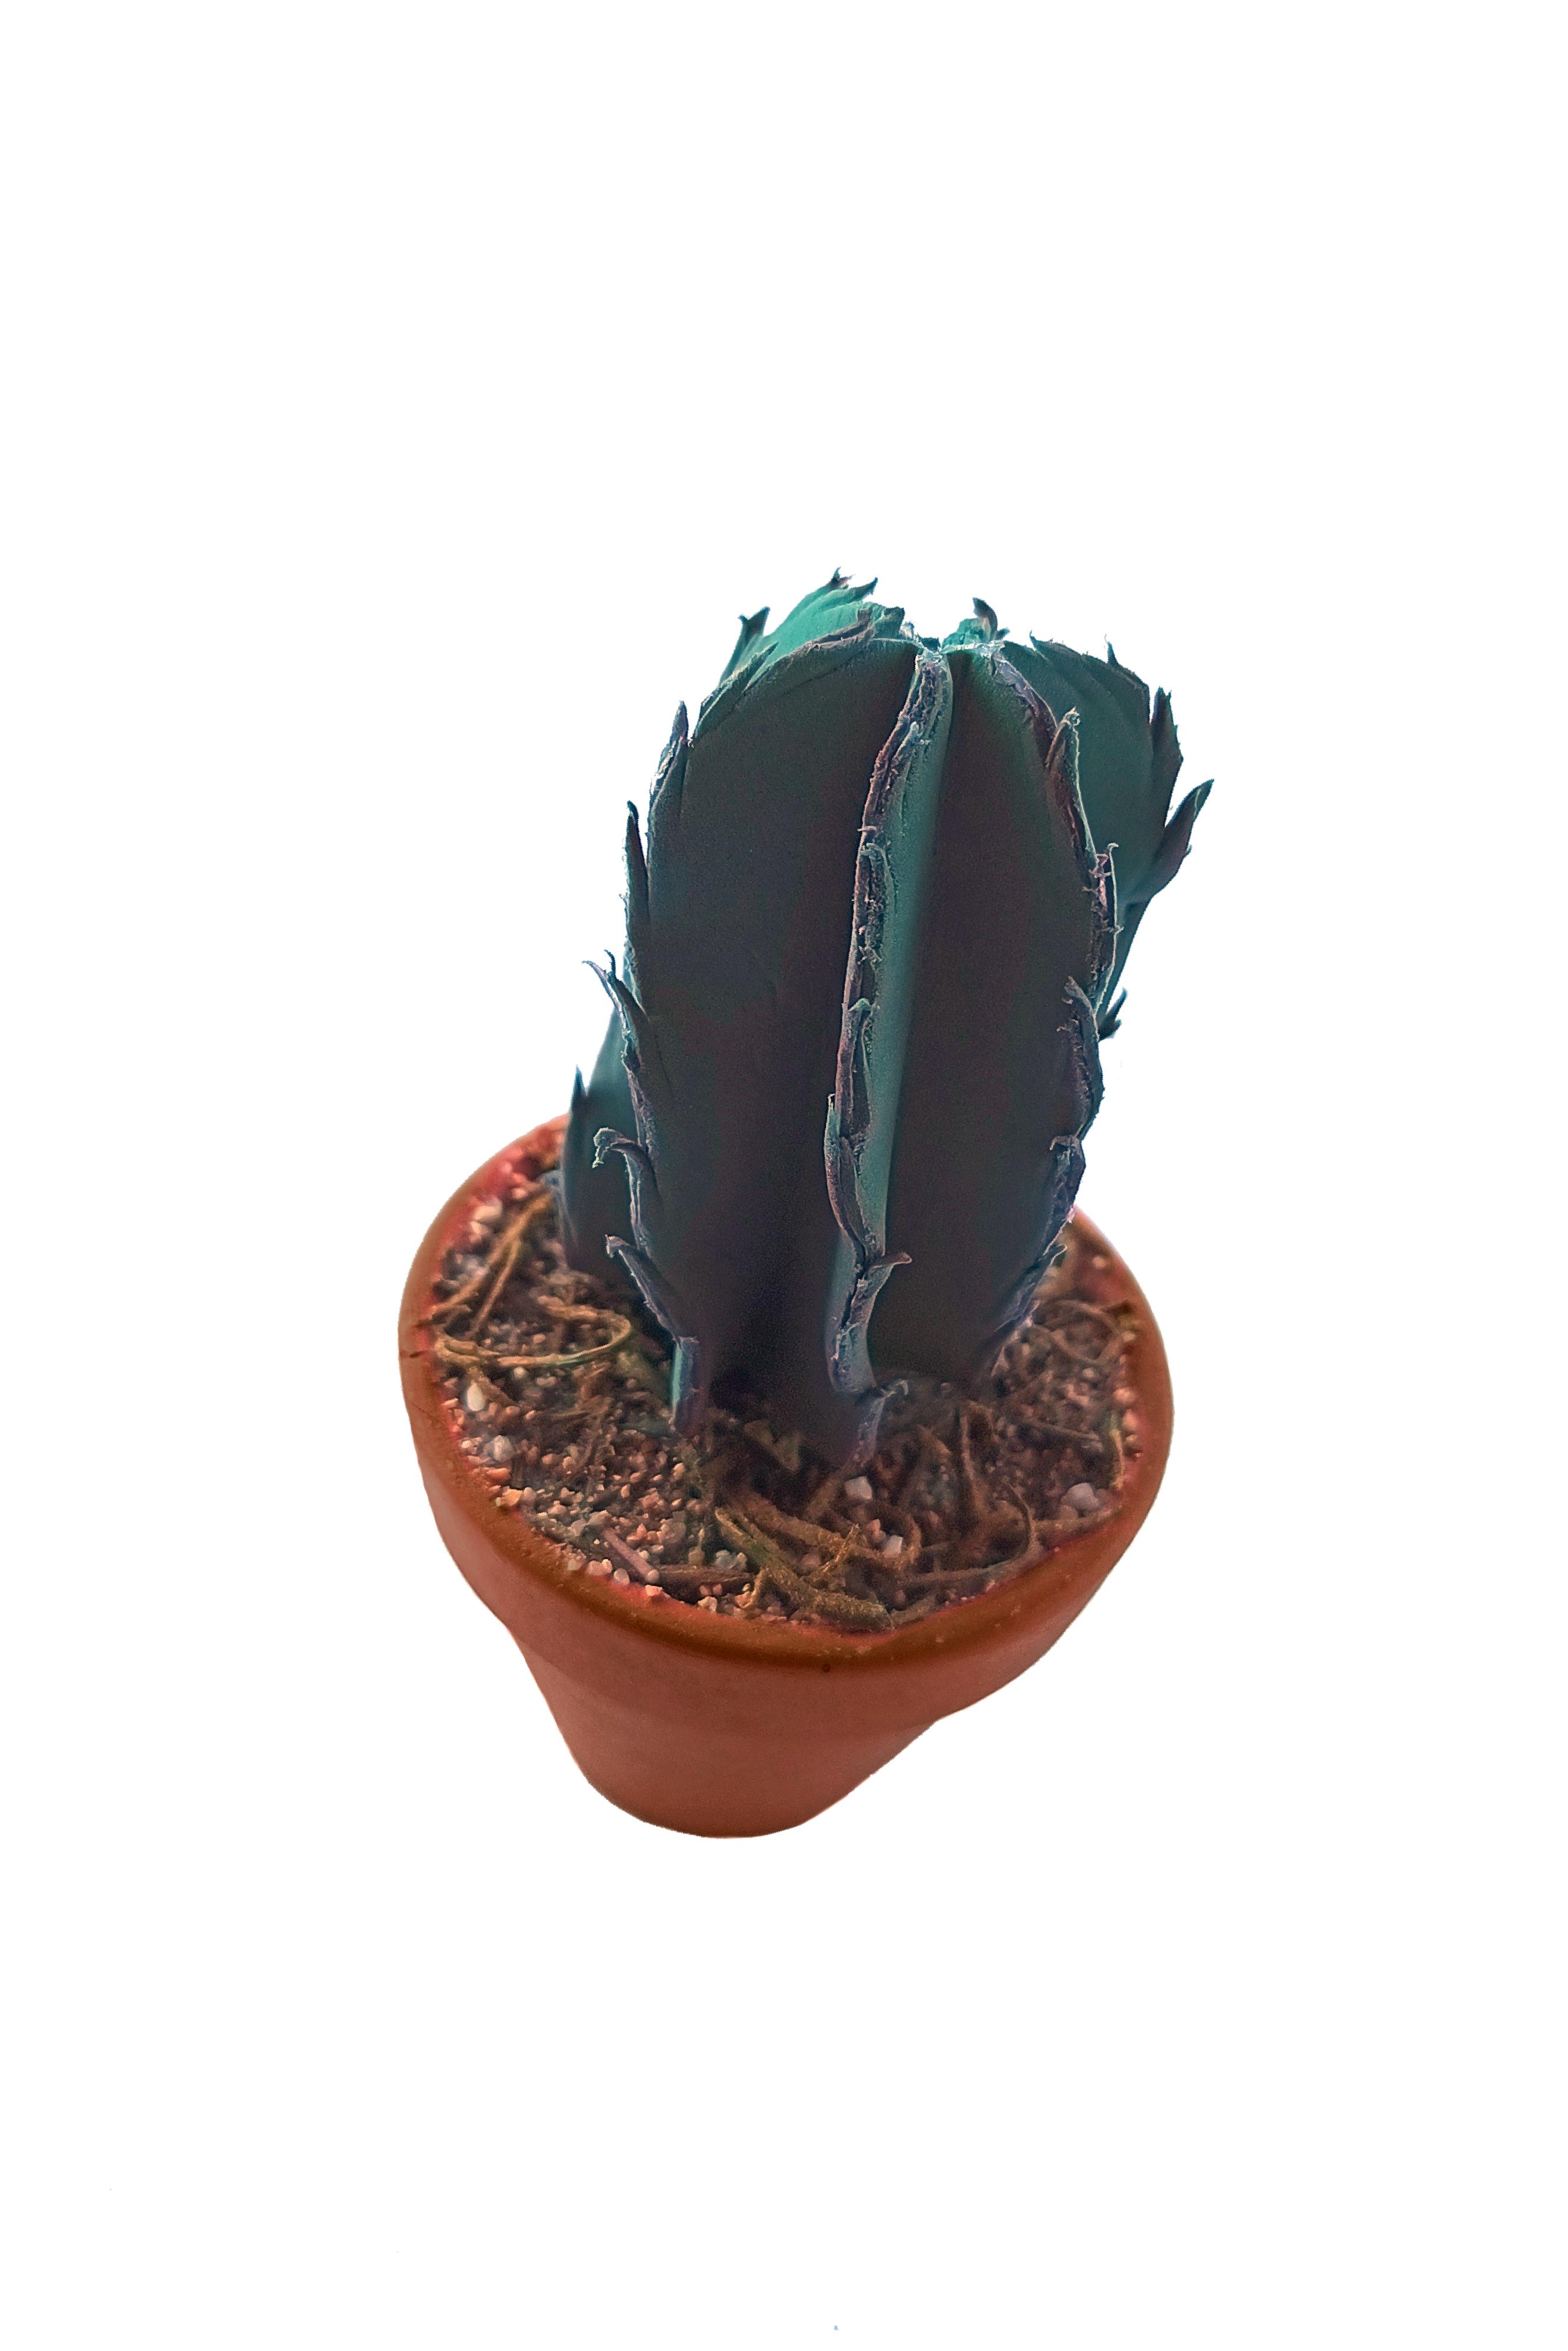 PG058 - Cactus